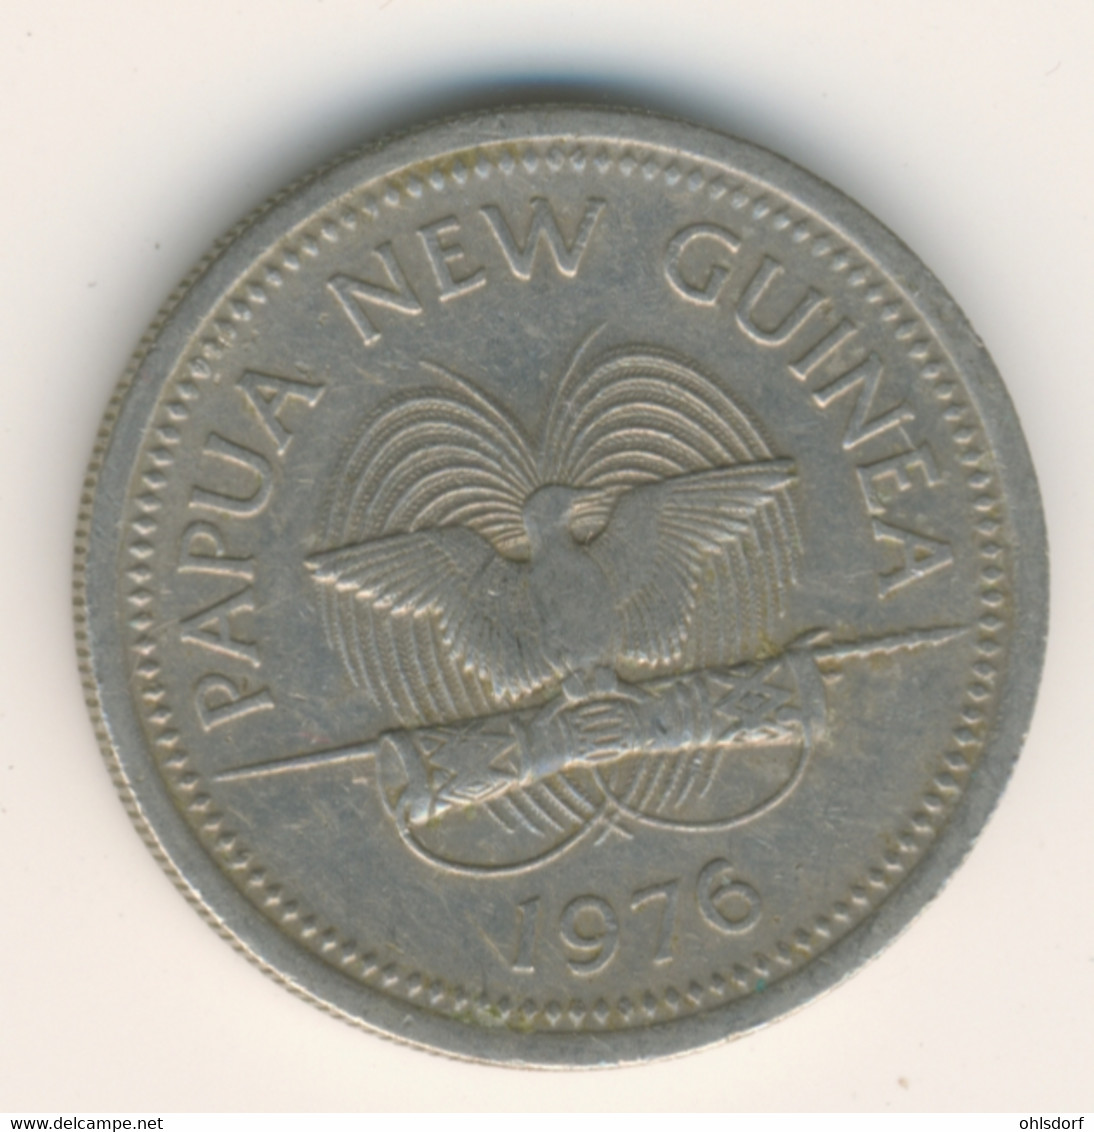 PAPUA NEW GUINEA 1976: 10 Toea, KM 4 - Papúa Nueva Guinea